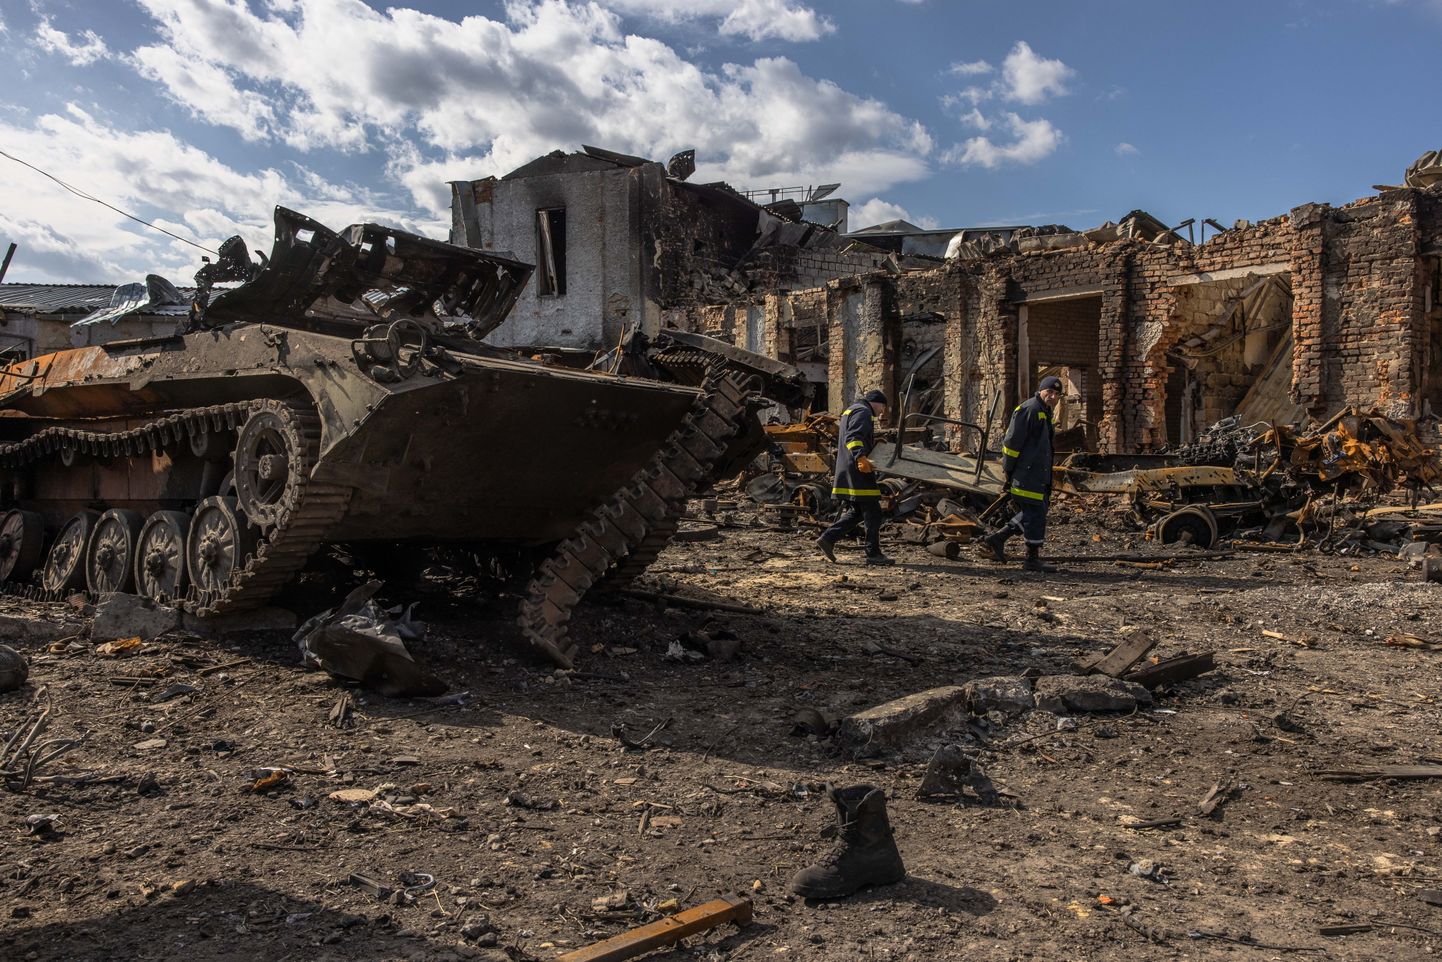 Näha olev hävitatud Vene sõjamasin võis Ukrainas oma otsa leida ka mitteturvalise raadioside tõttu. Vene väed ei kasuta Ukrainas kuigi palju oma moodsaid militaarside vahendeid.